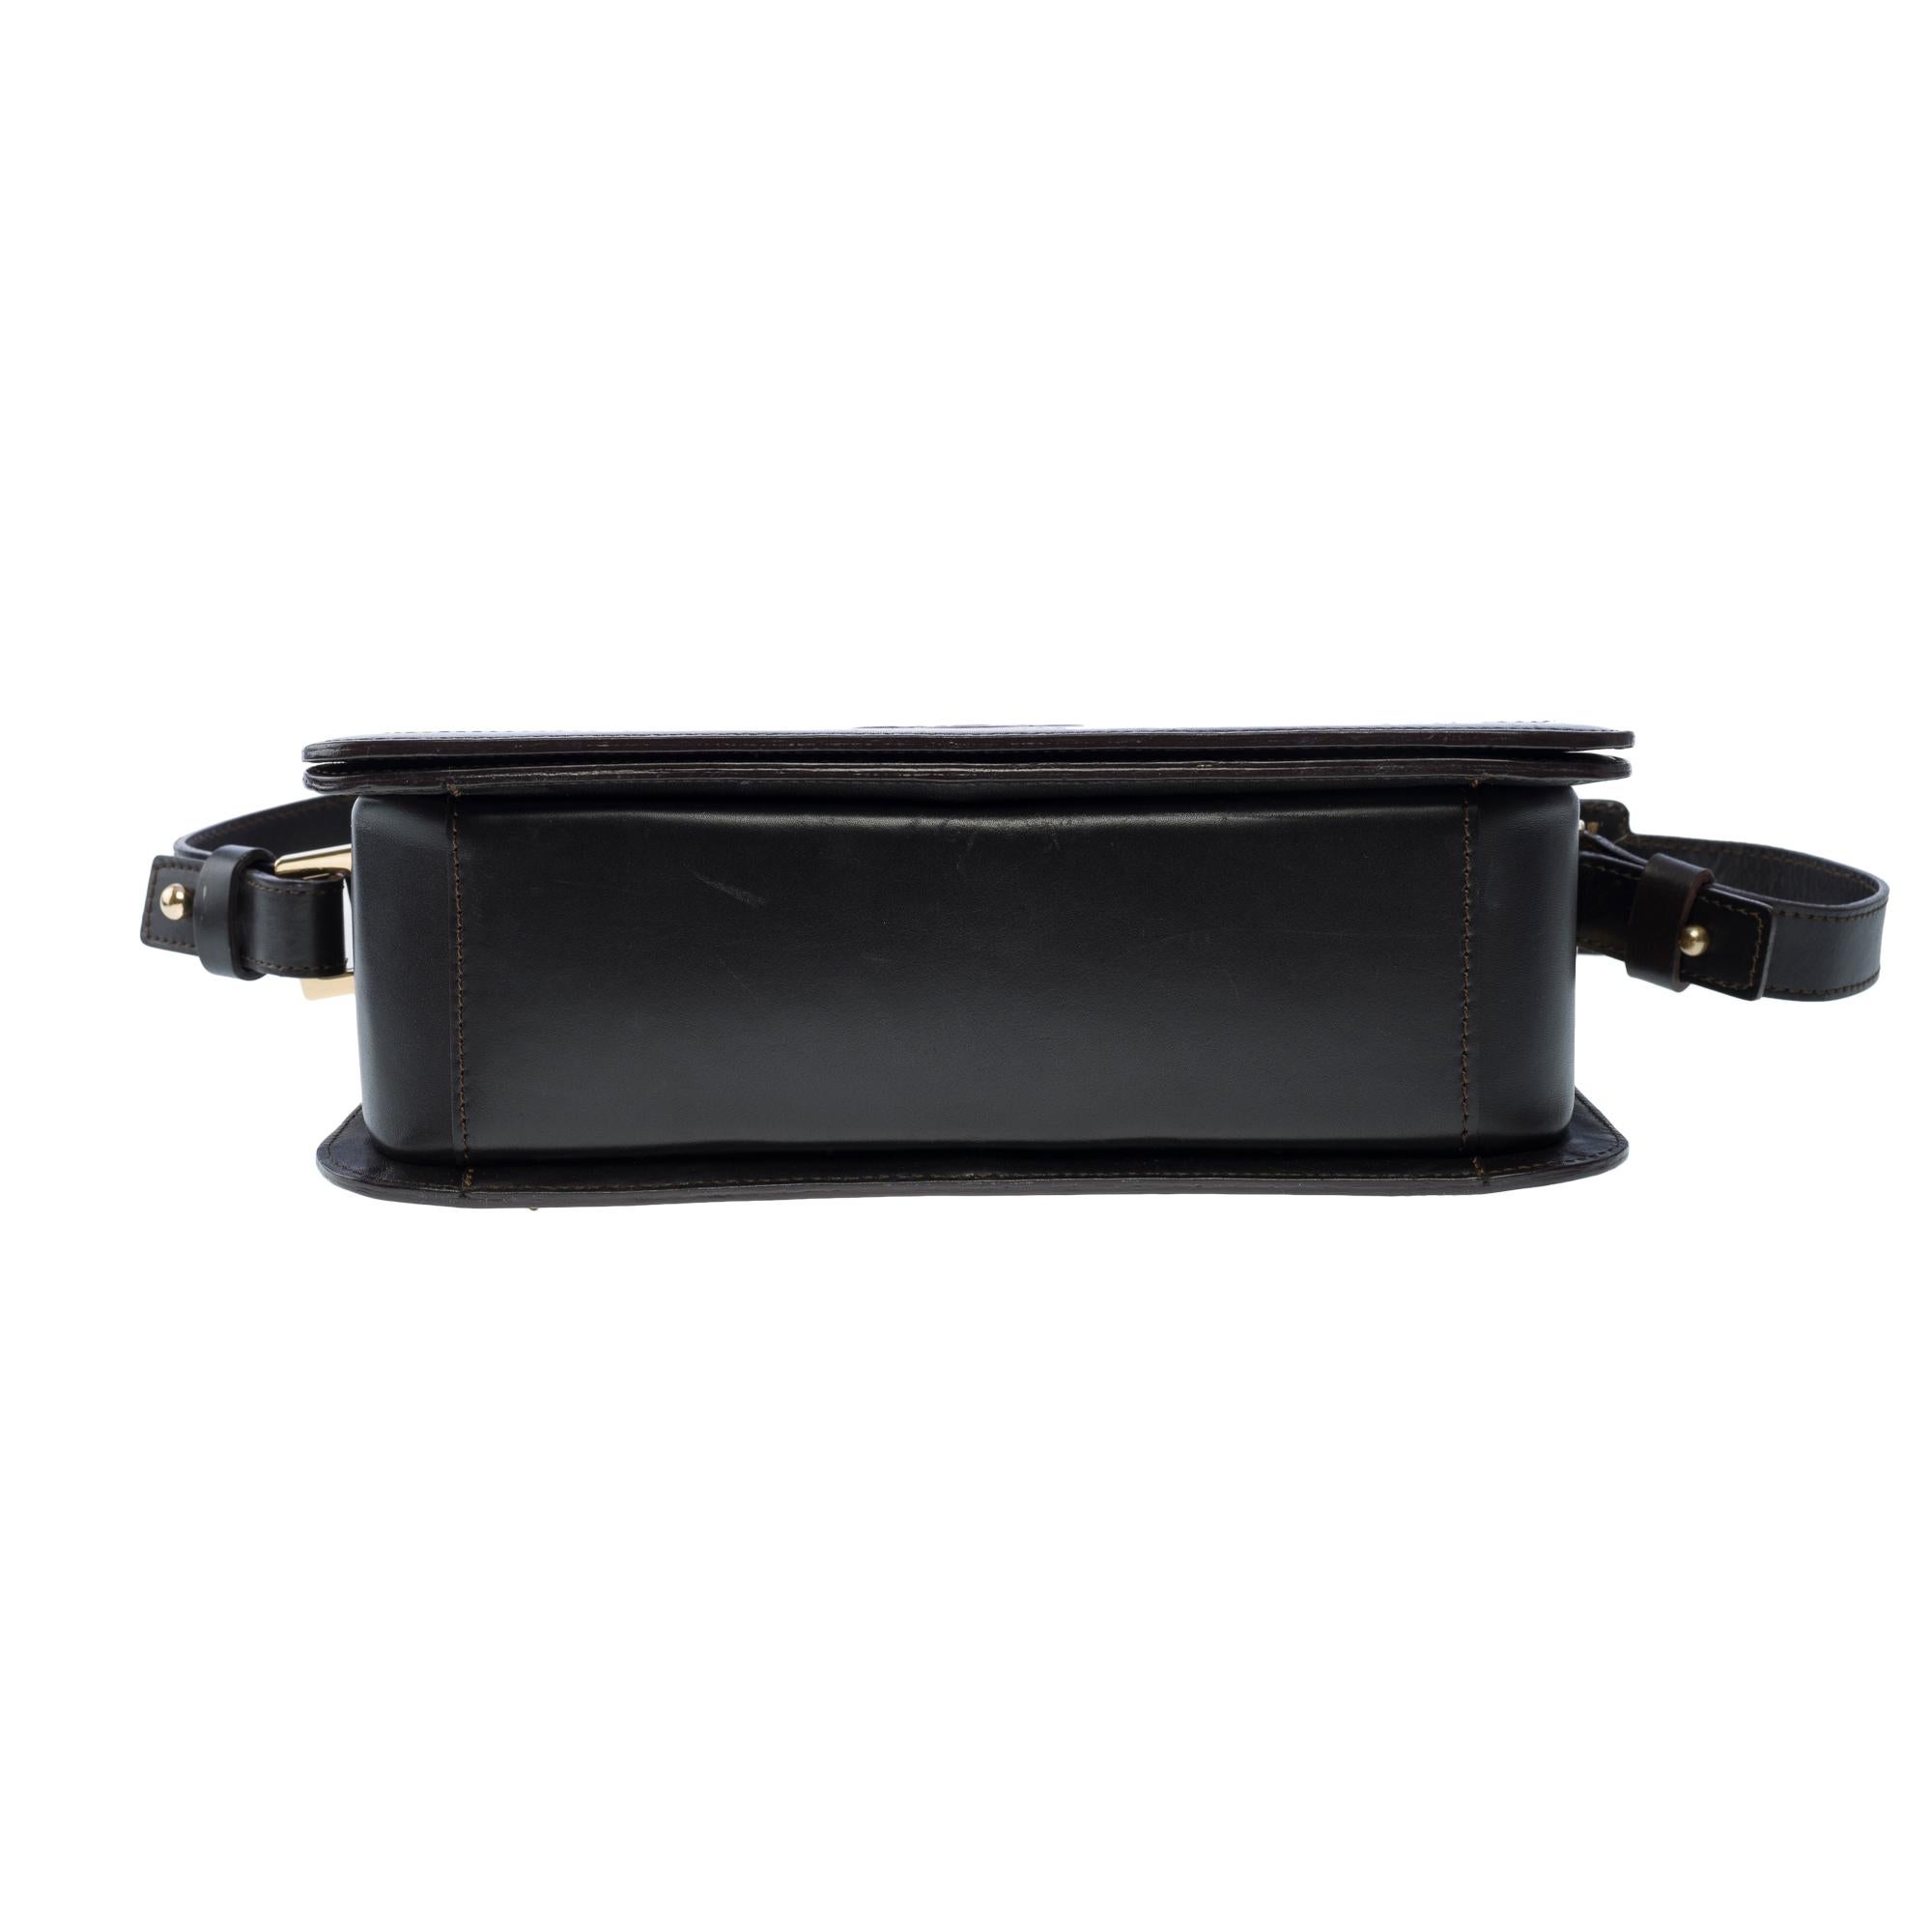 Celine Triomphe shoulder flap bag in black leather, GHW 6